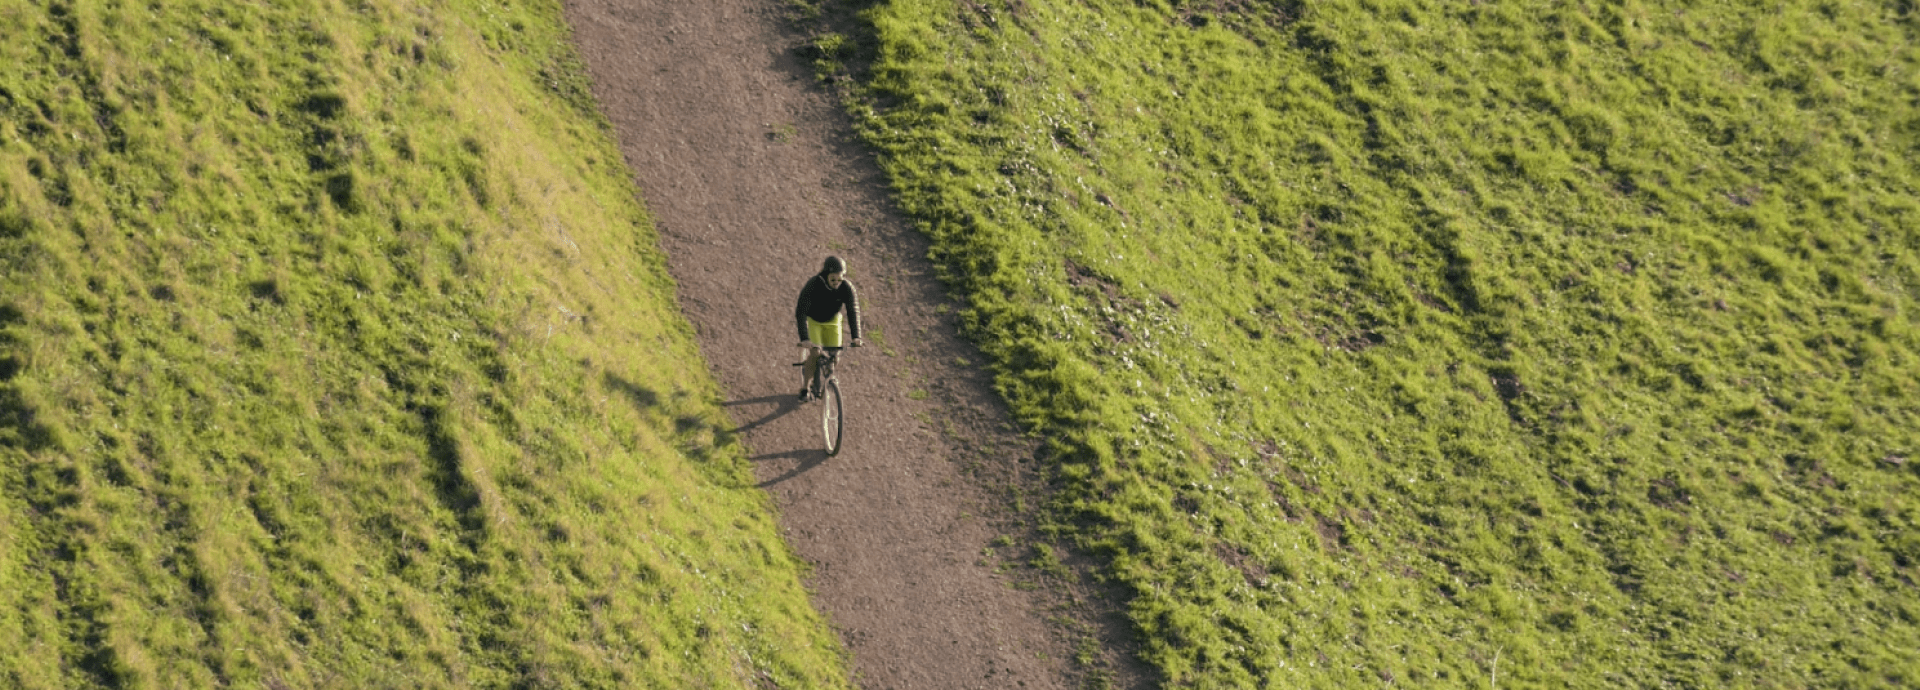 Een jongen op een fiets op een zandweg met links en rechts weiland